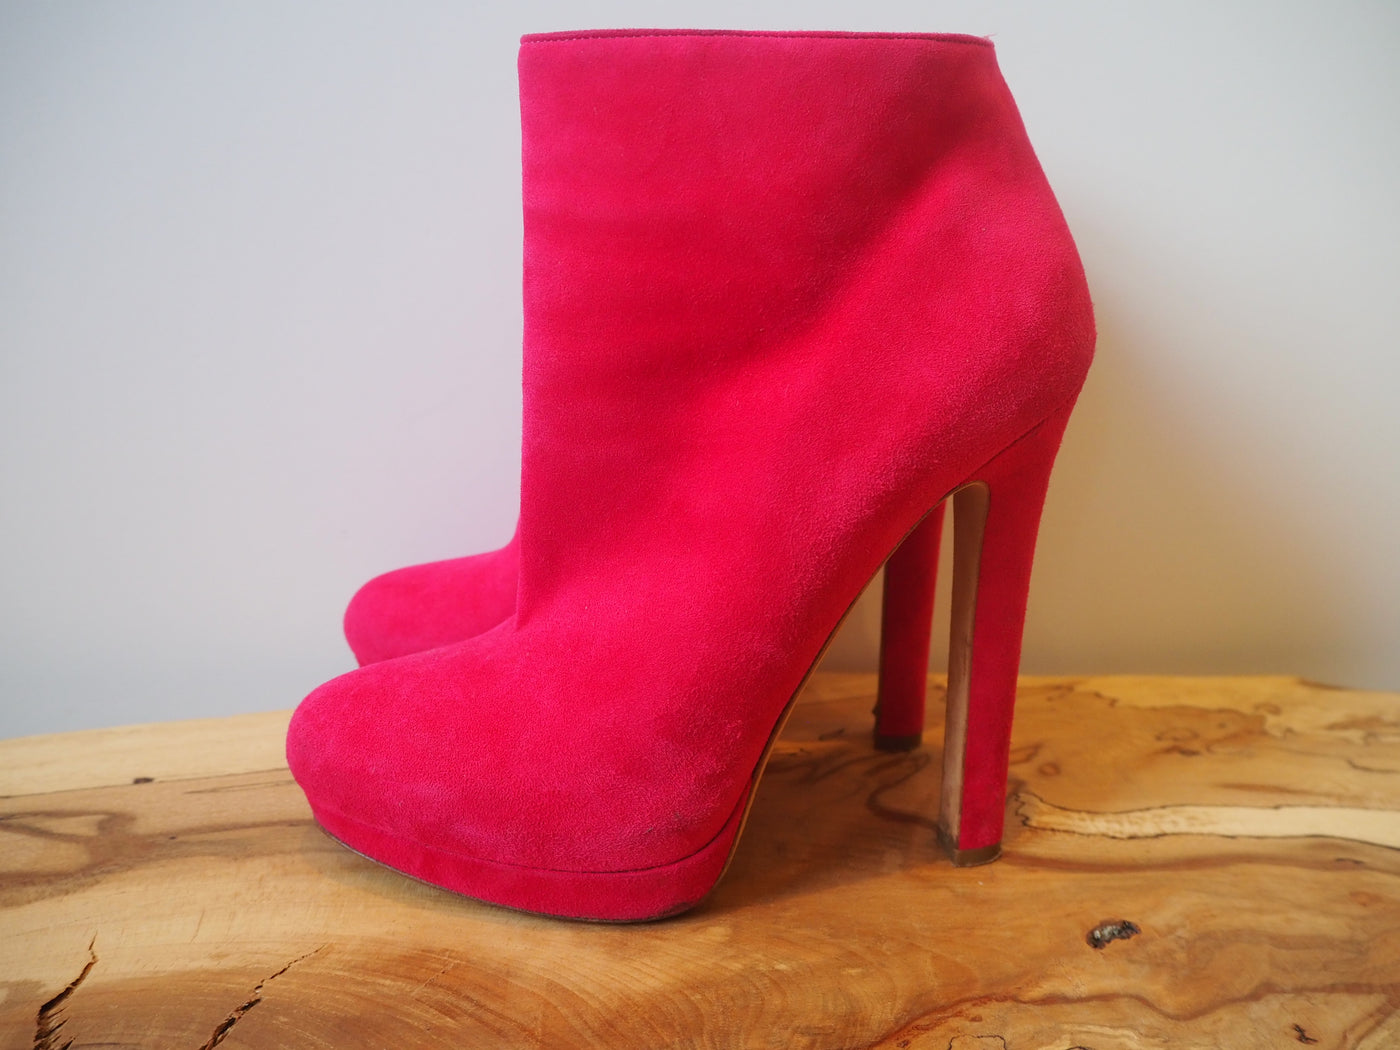 Alexander McQueen Pink Suede High Heel Boot Size 5